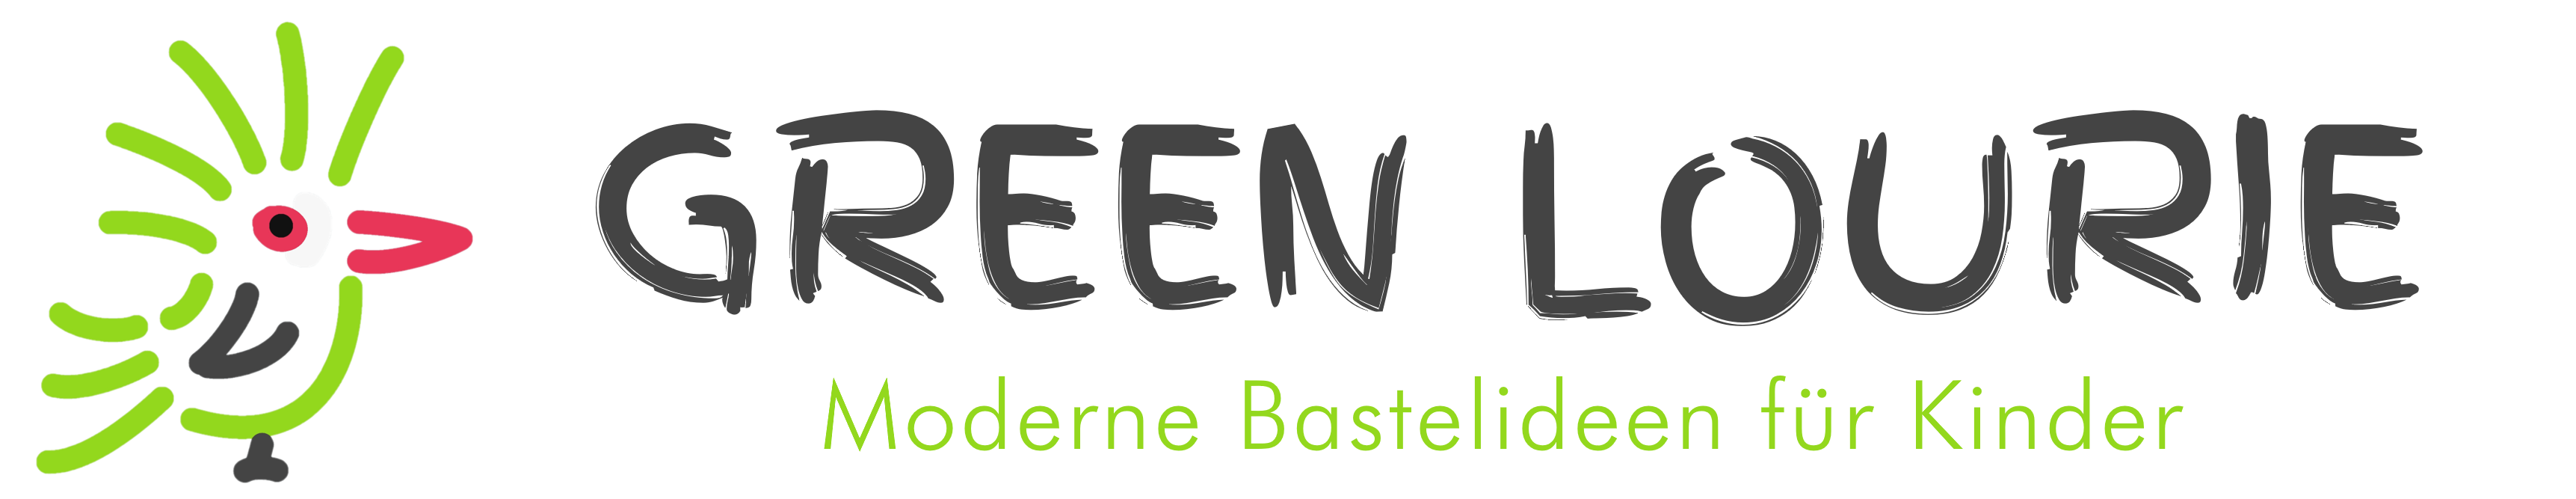 Green Lourie - Moderne Bastelideen für Kinder